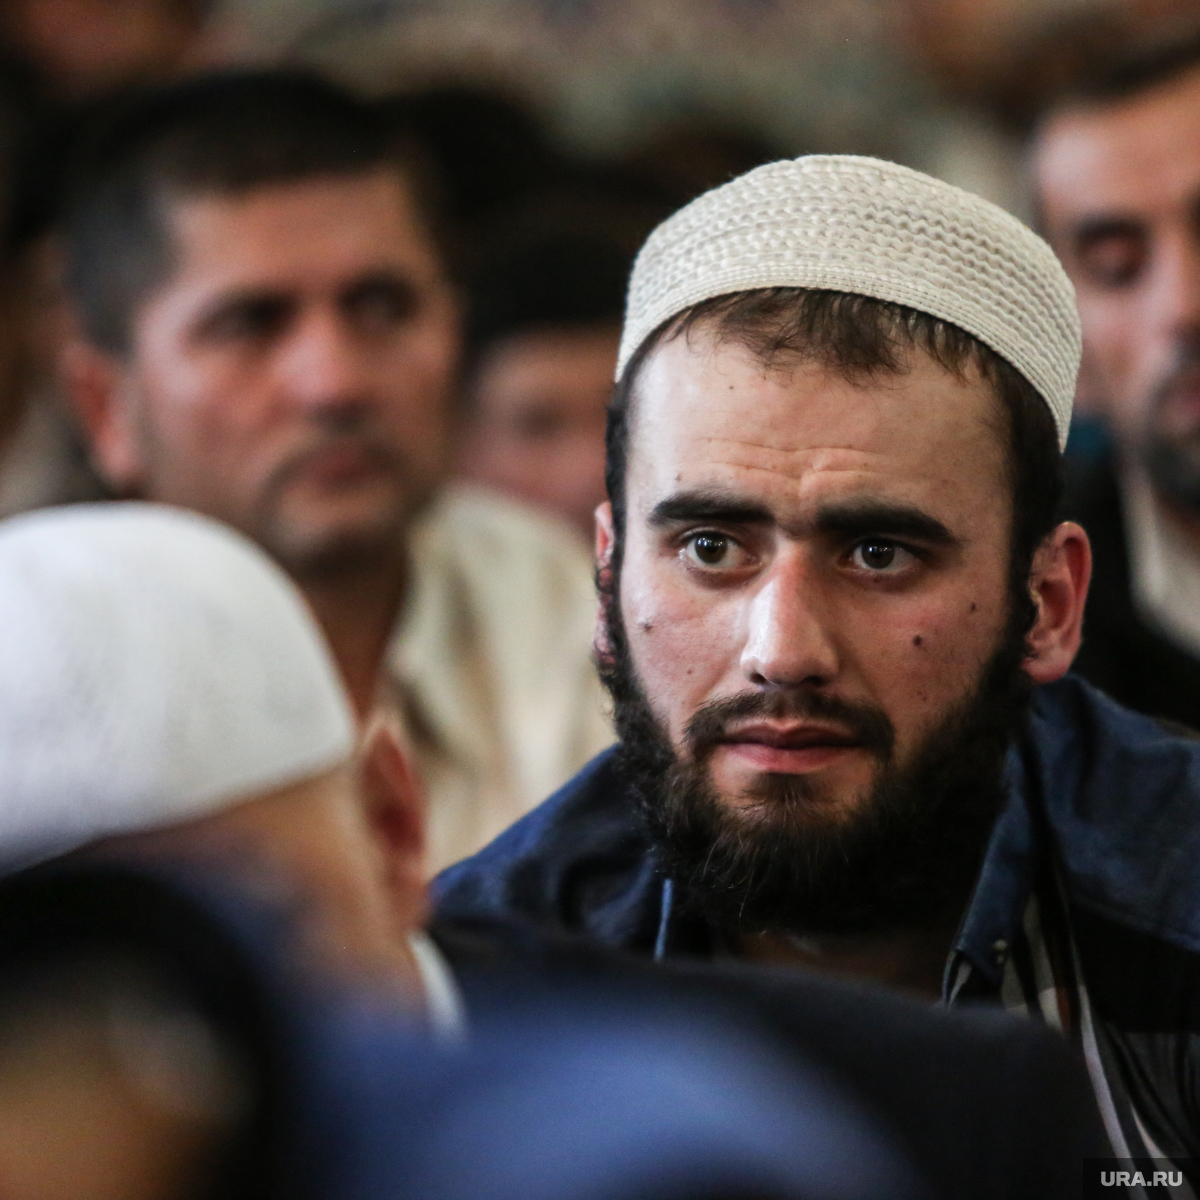 Мусульманский таджикский. Таджики мусульмане. Таджик с бородой. Мусульманская борода таджики. Мусульманин с бородой в мечети.